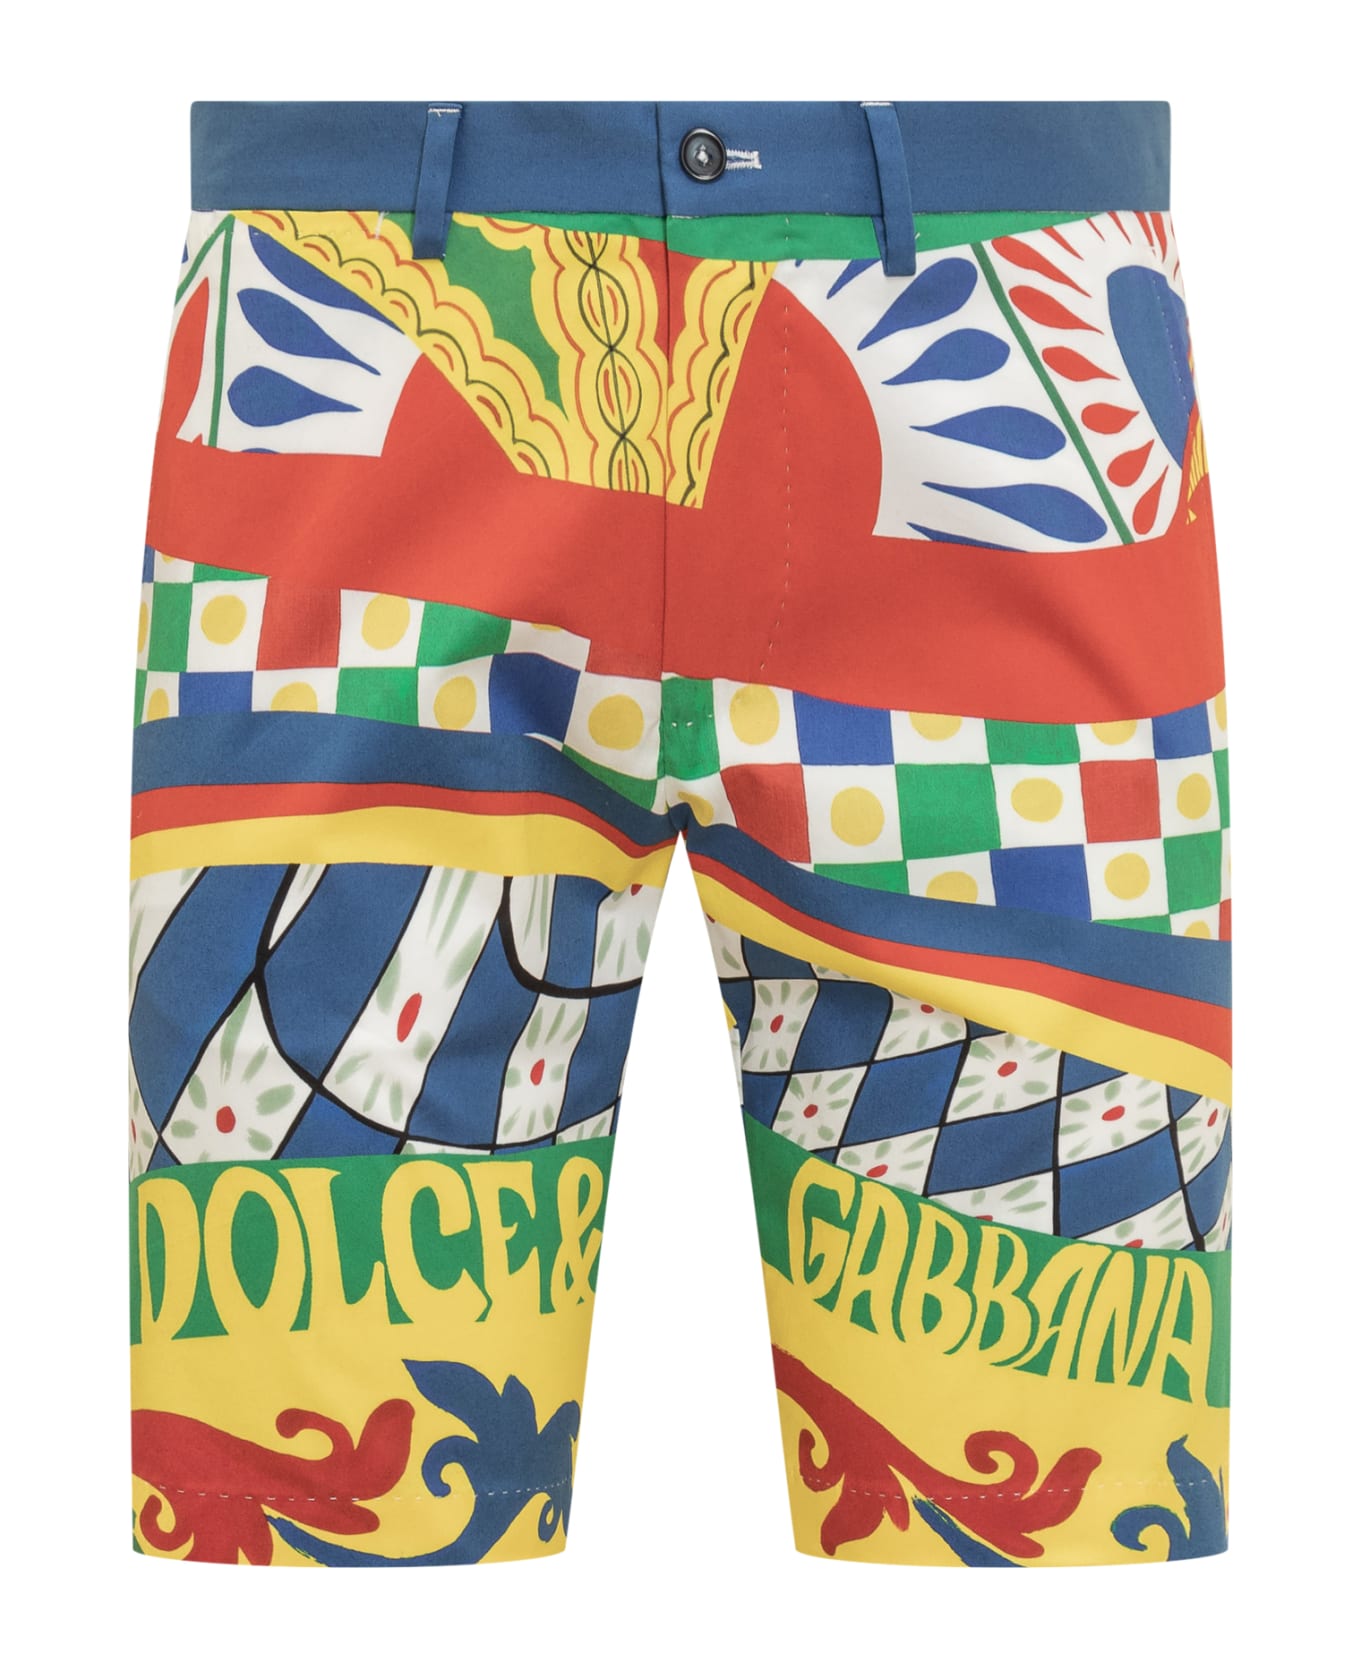 Dolce & Gabbana 'carretto' Bermuda Shorts - CARRETTO